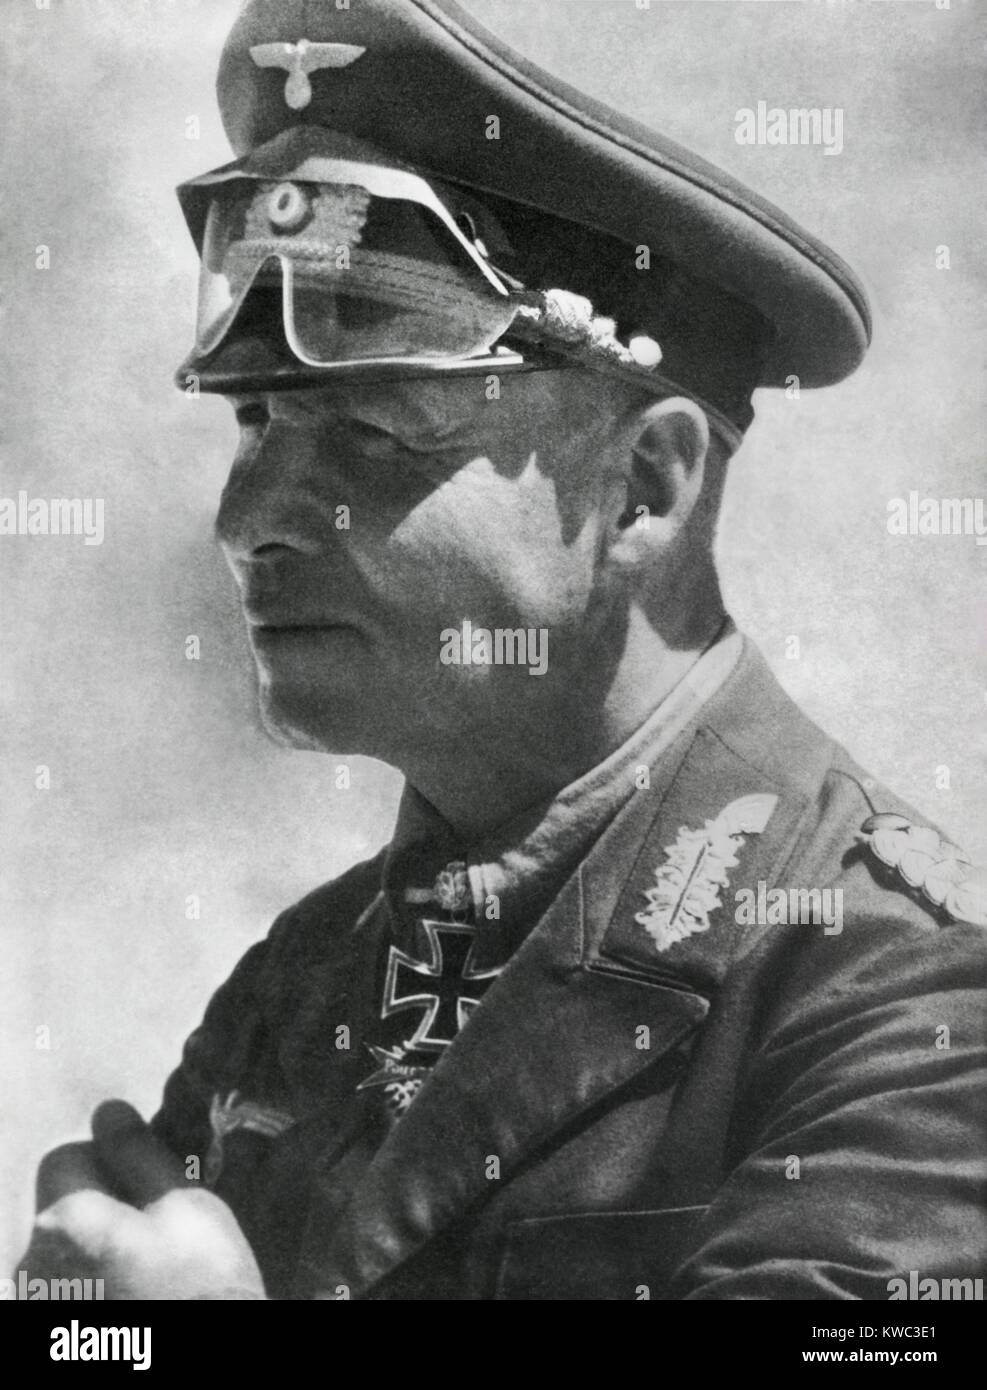 Le maréchal Erwin Rommel en Afrique du Nord, janvier 1942. Il porte sa Croix de Chevalier de la Croix de fer avec feuilles de chêne et glaives. World War 2 (BSLOC   2015 13 64) Banque D'Images